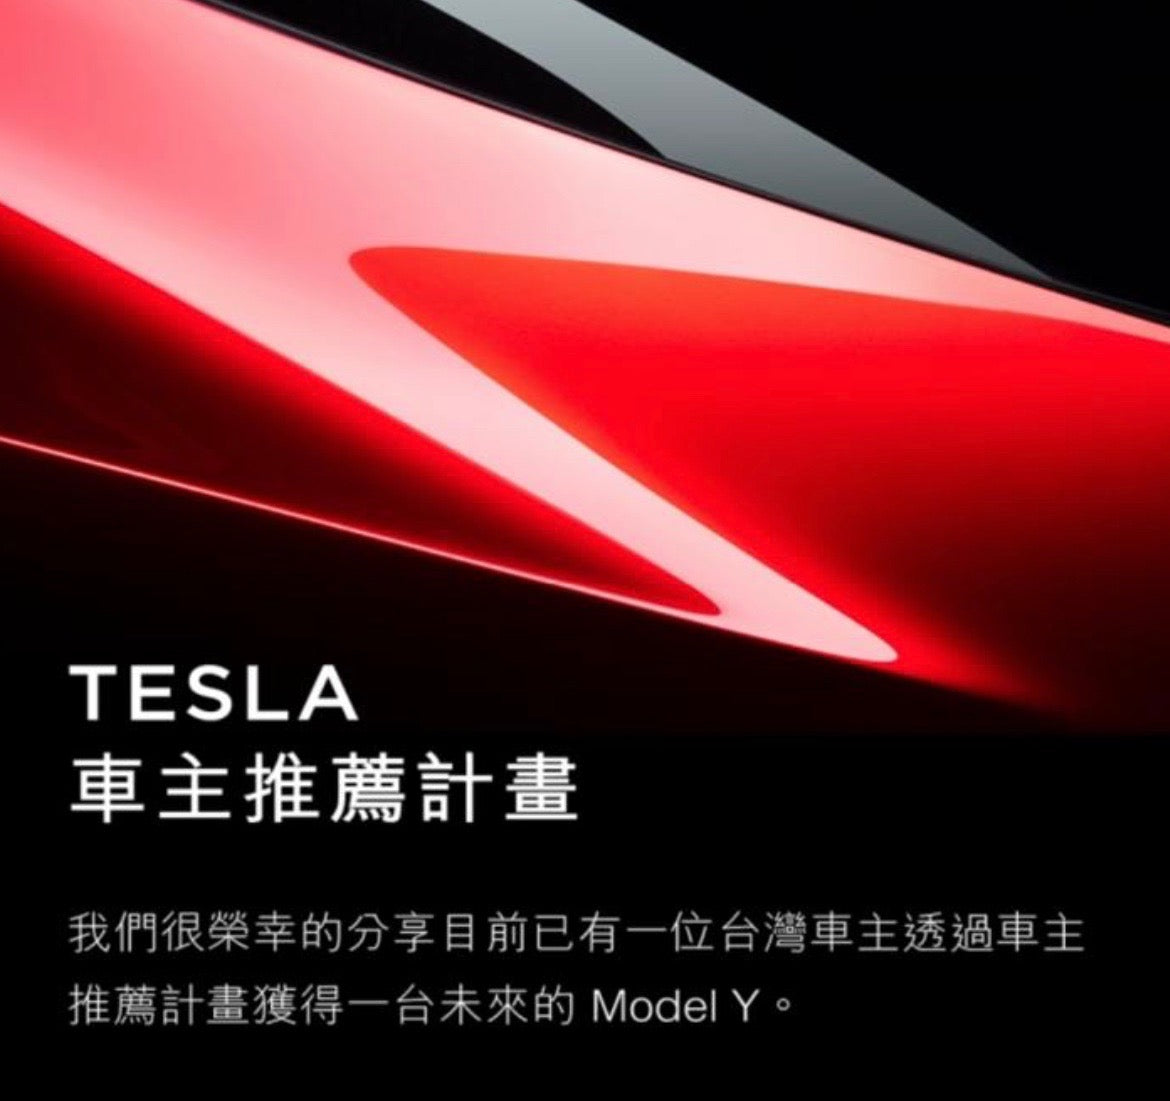 Tesla-ModelY-Referral-Winner-Taiwan